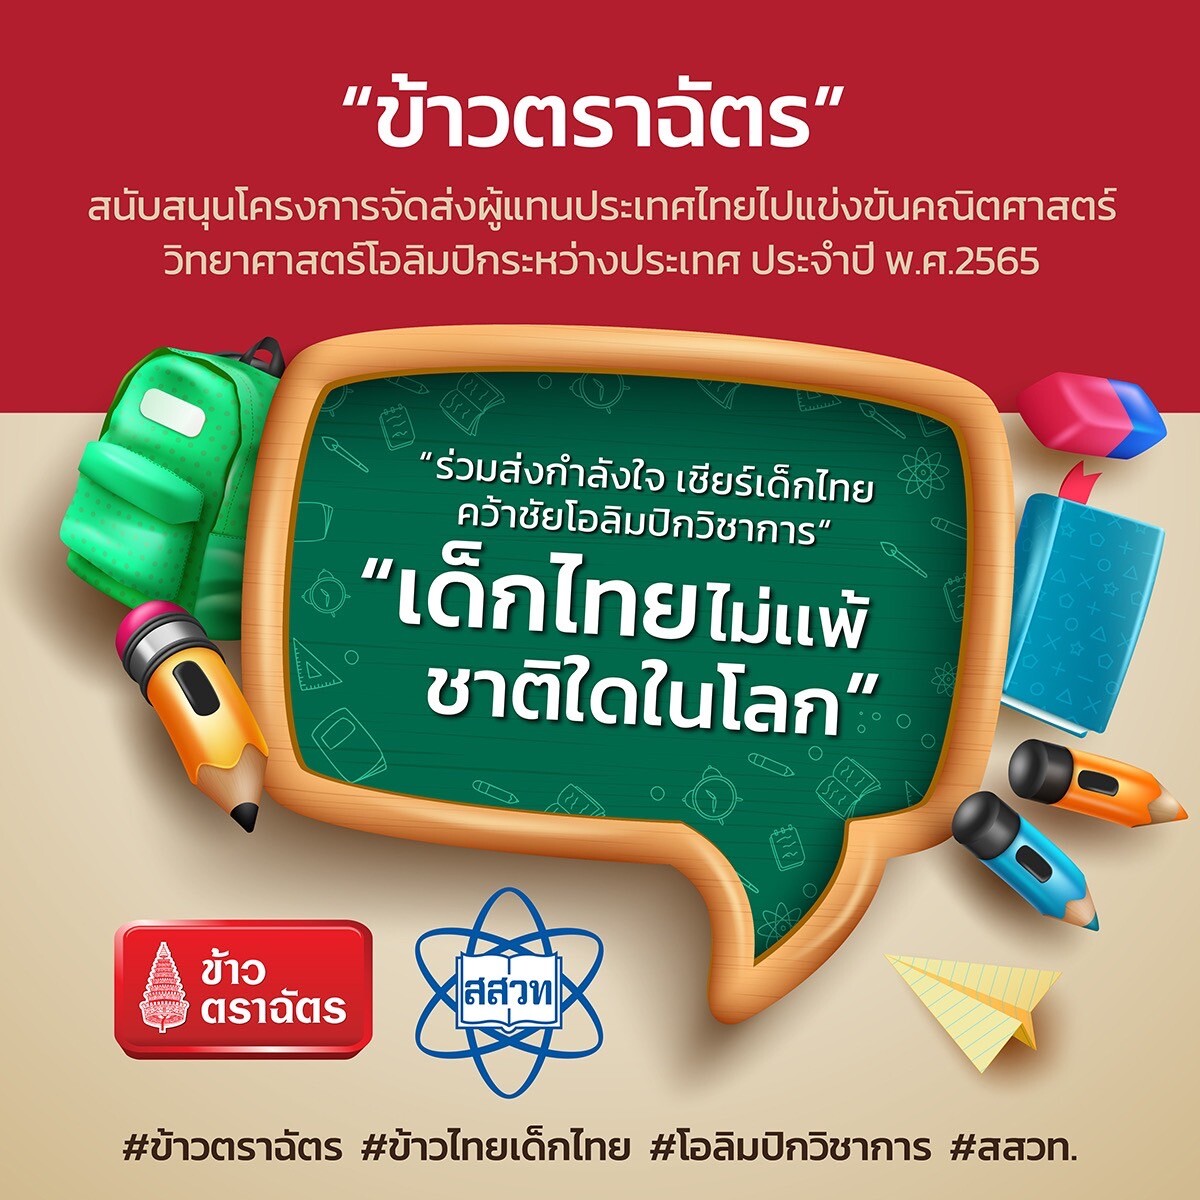 โครงการ "ข้าวไทย เด็กไทย" โดยข้าวตราฉัตร ก้าวสู่ปีที่ 18 ส่งเสริมอัจฉริยะเด็กไทย สู่เส้นทางโอลิมปิกวิชาการระดับโลก